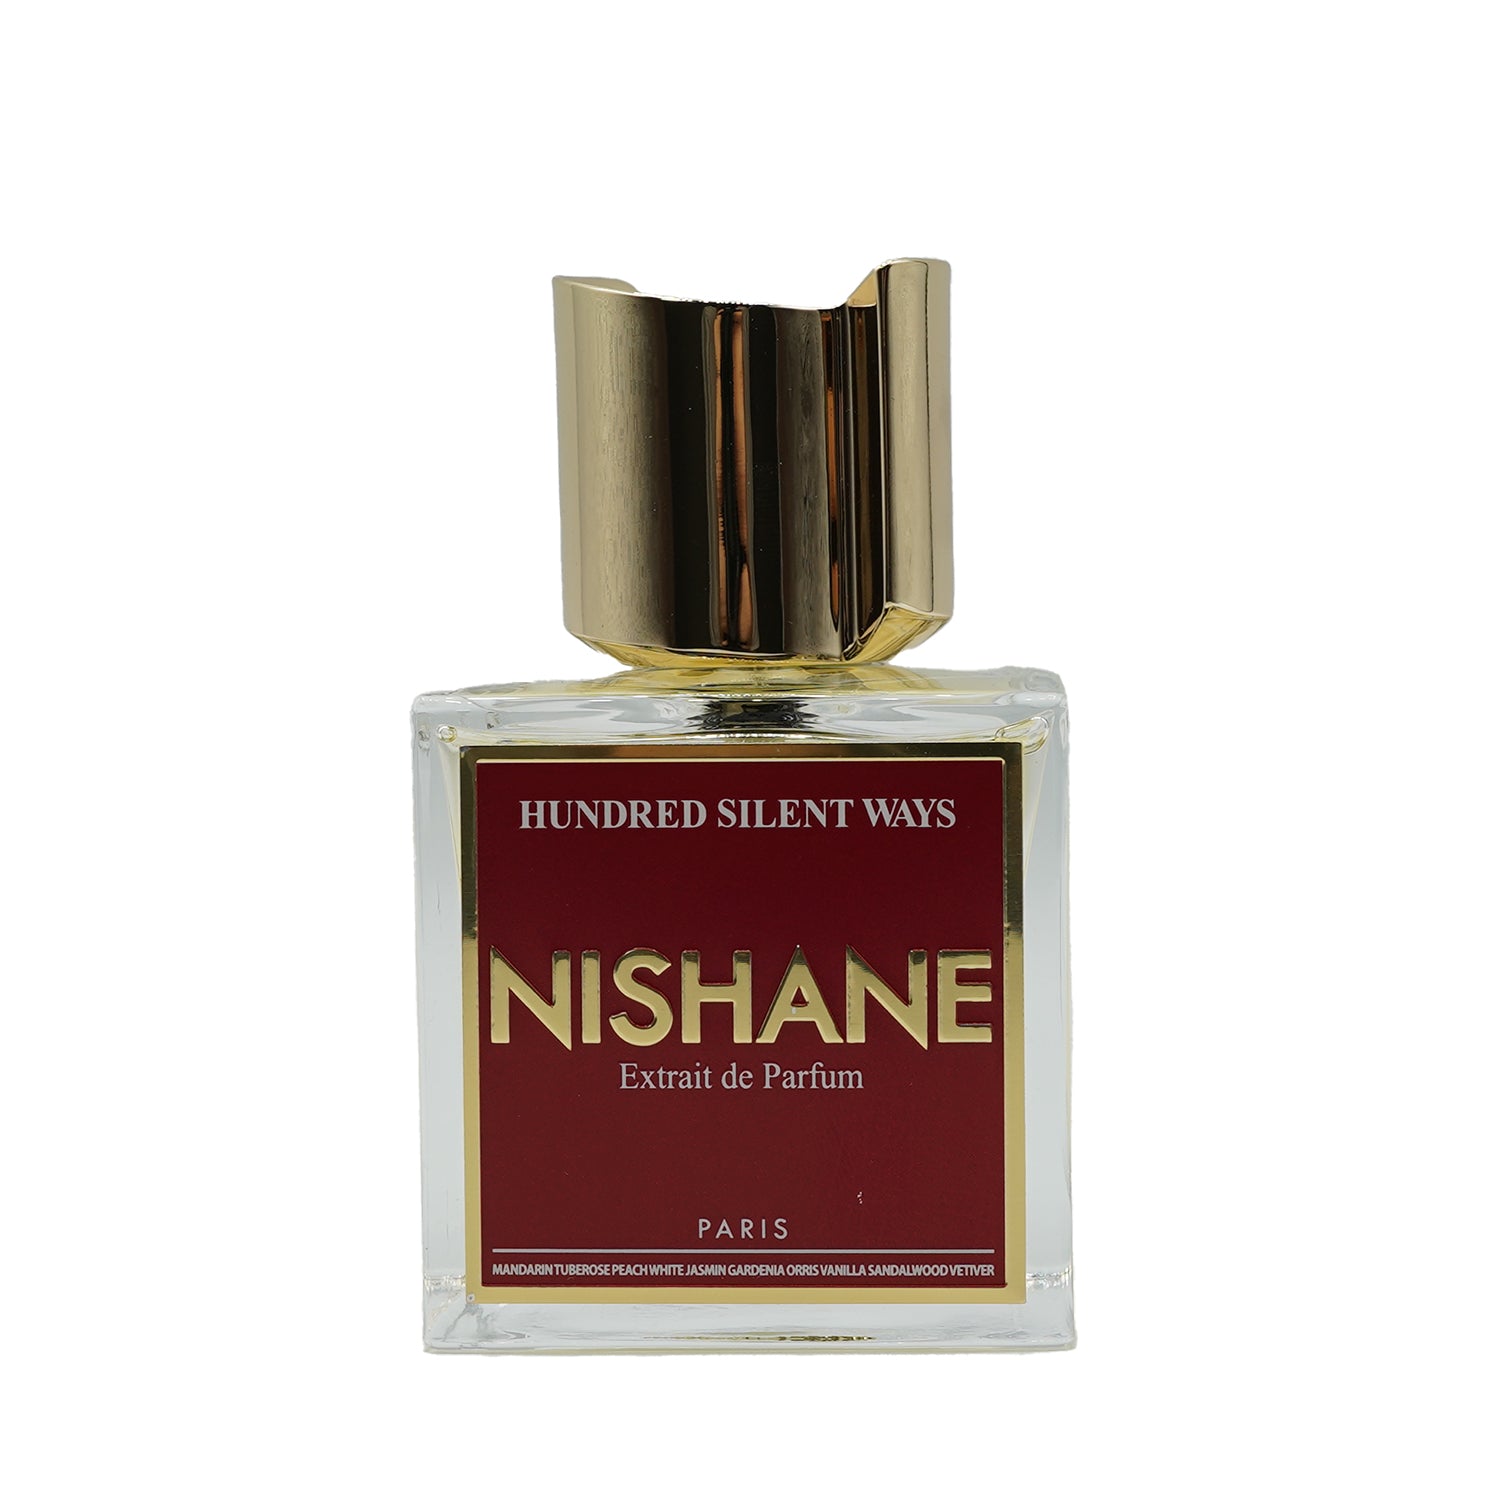 Nishane | Hundred Silent Ways bottling 